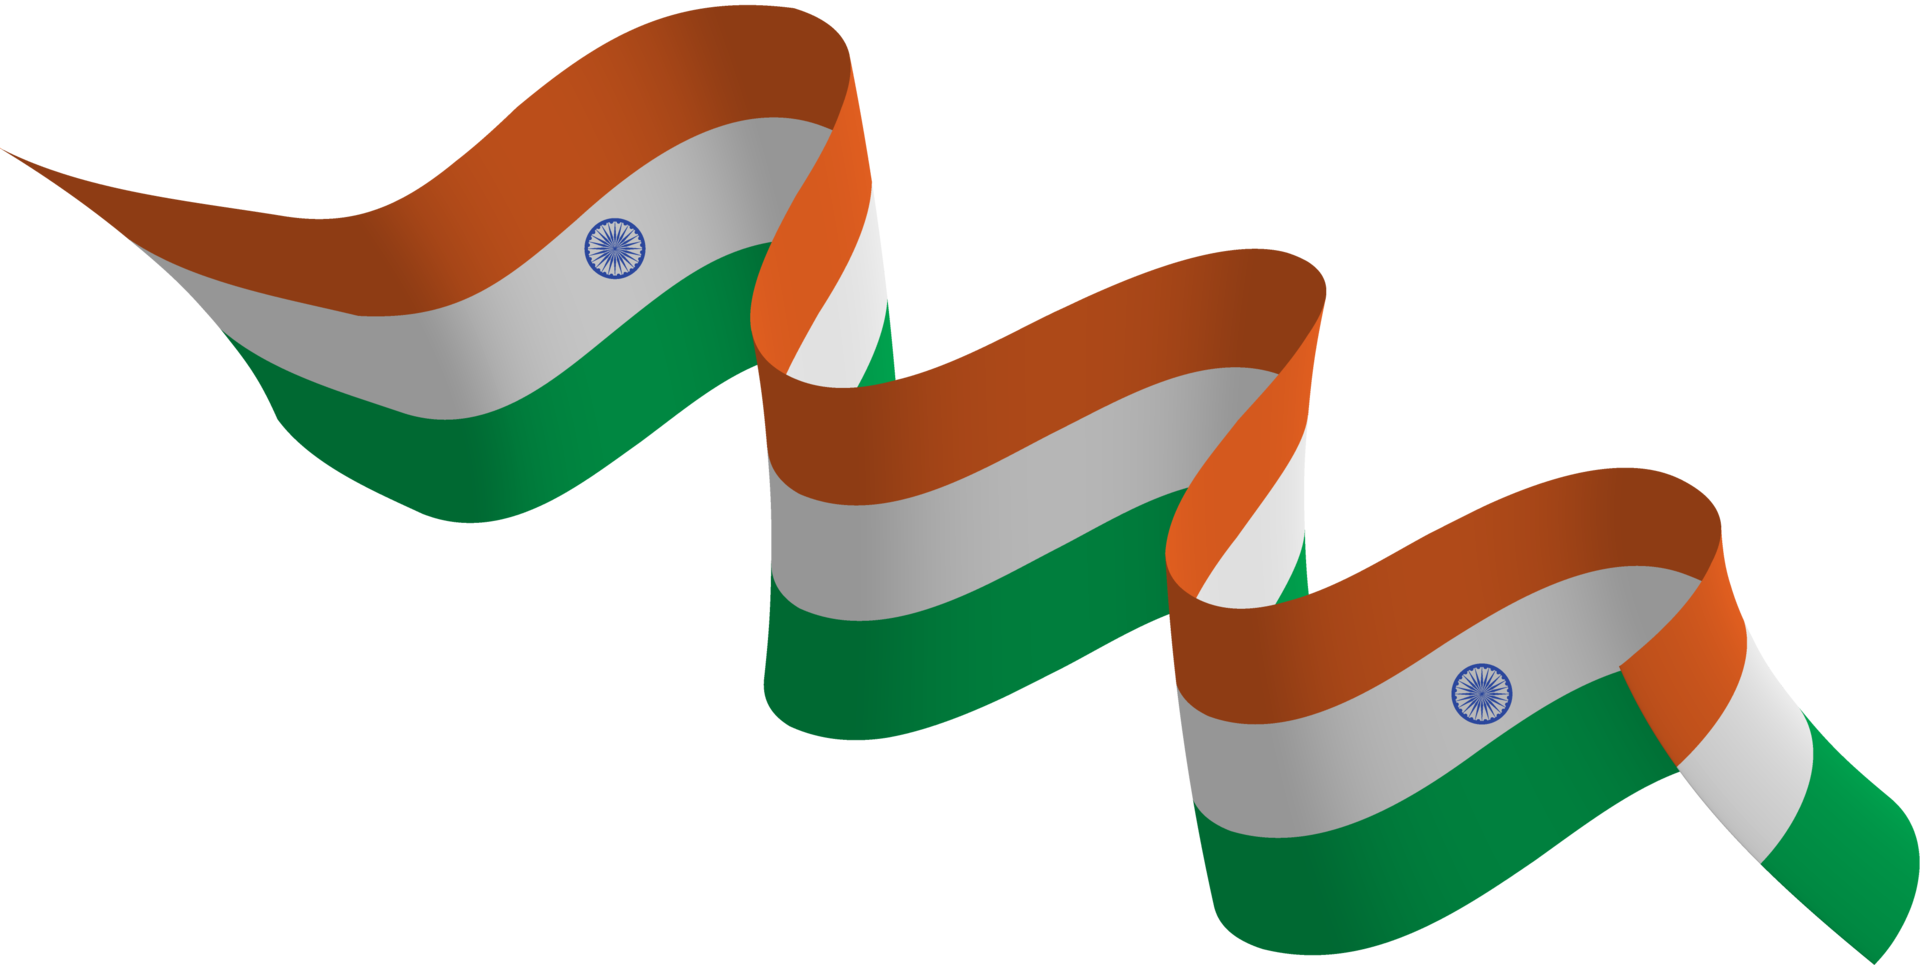 Đây là một biểu ngữ cờ Ấn Độ miễn phí đầy sáng tạo và độc đáo! Với nền trong suốt PNG, bạn có thể sử dụng hình ảnh này trong nhiều mục đích khác nhau: tạo banner cho trang web của bạn, làm hình nền cho điện thoại của bạn hoặc tạo nhãn dán. Hãy nhấp vào ảnh để tải xuống biểu ngữ và thử sức mình với những ý tưởng sáng tạo.